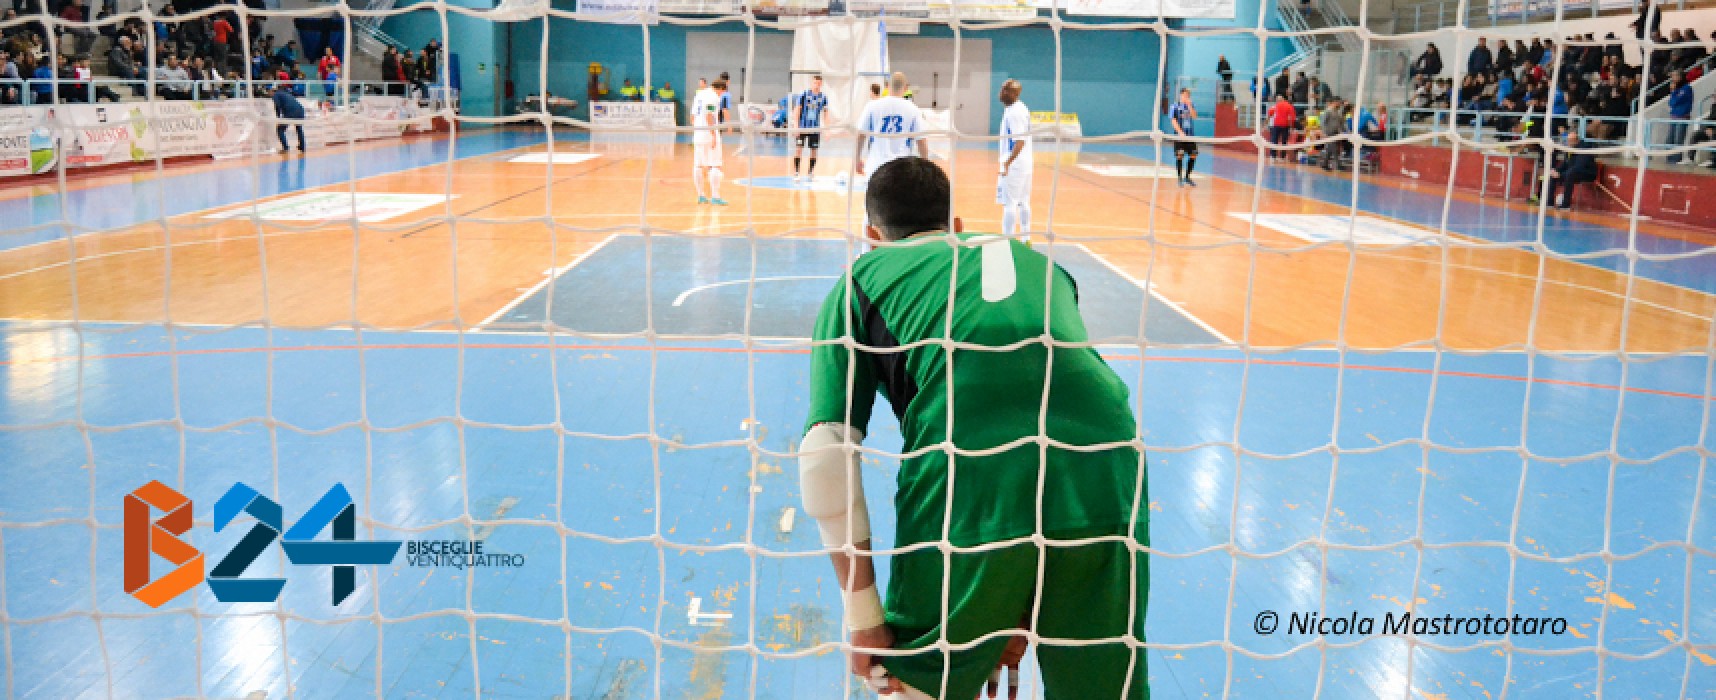 Stasera Futsal Bisceglie-Diaz, test amichevole per ritrovare la condizione